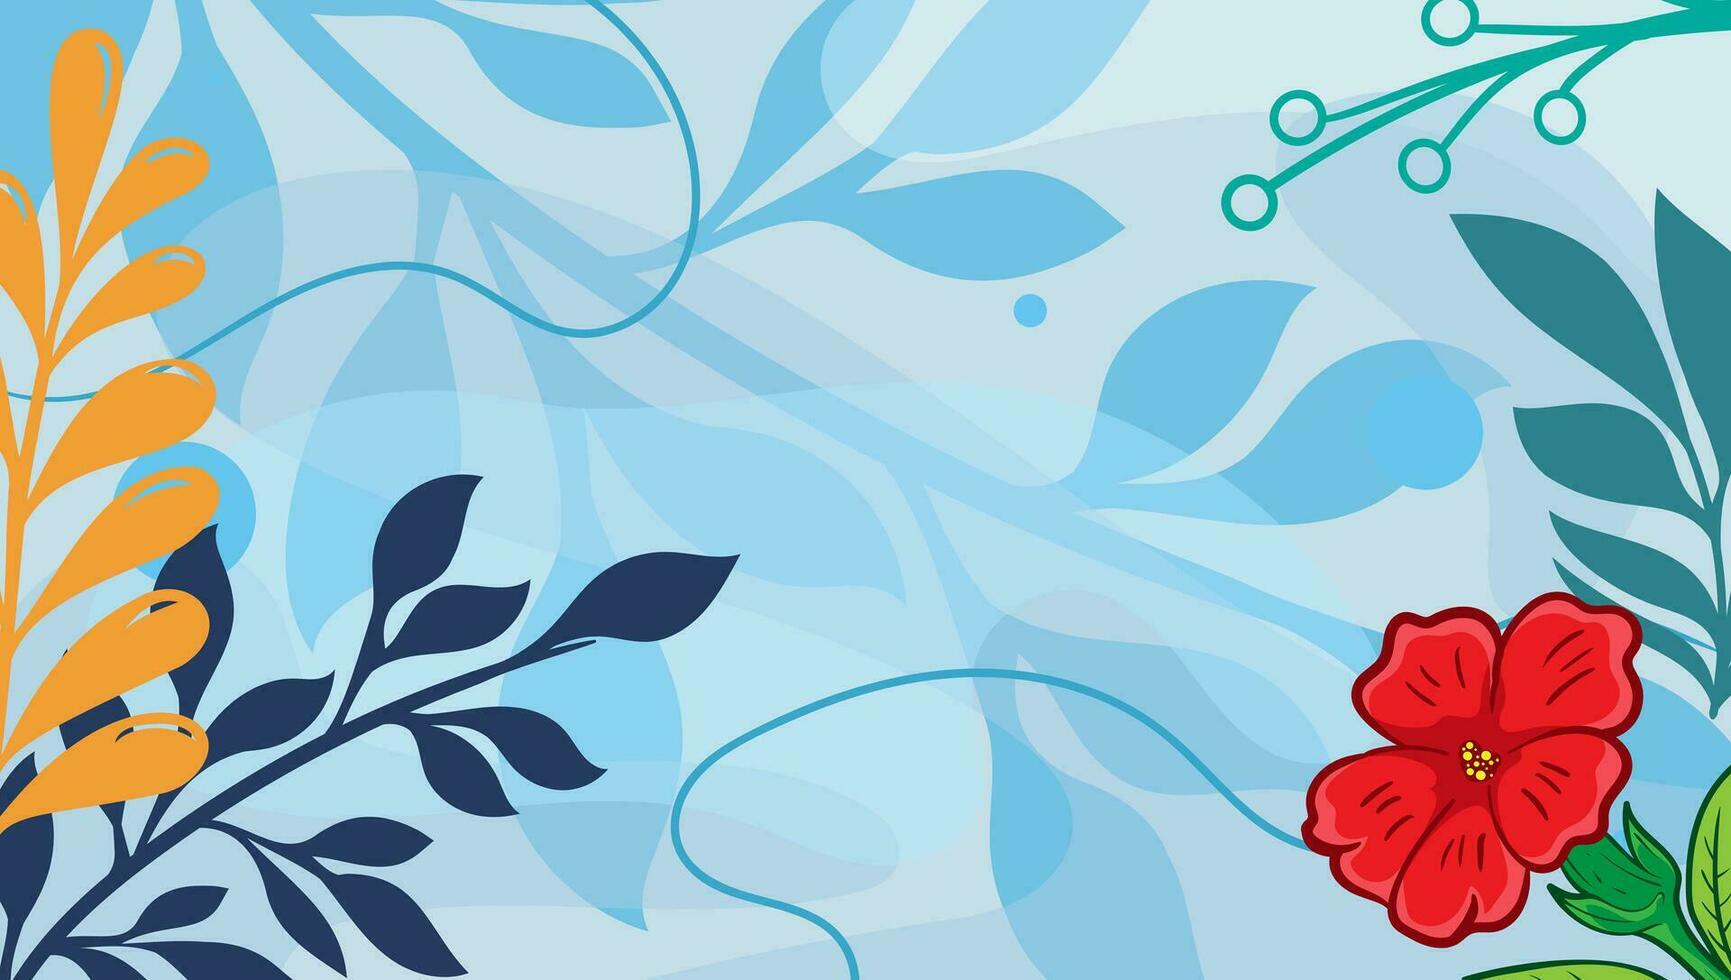 nackt Blumen- abstrakt Formen Hintergrund mit Hand gezeichnet Textur, Bürste, verlassen und minimalistisch Stil. abstrakt minimal Hand gezeichnet zum Banner, Poster, Flyer, Sozial Medien Post oder Geschichten, Vorlage vektor